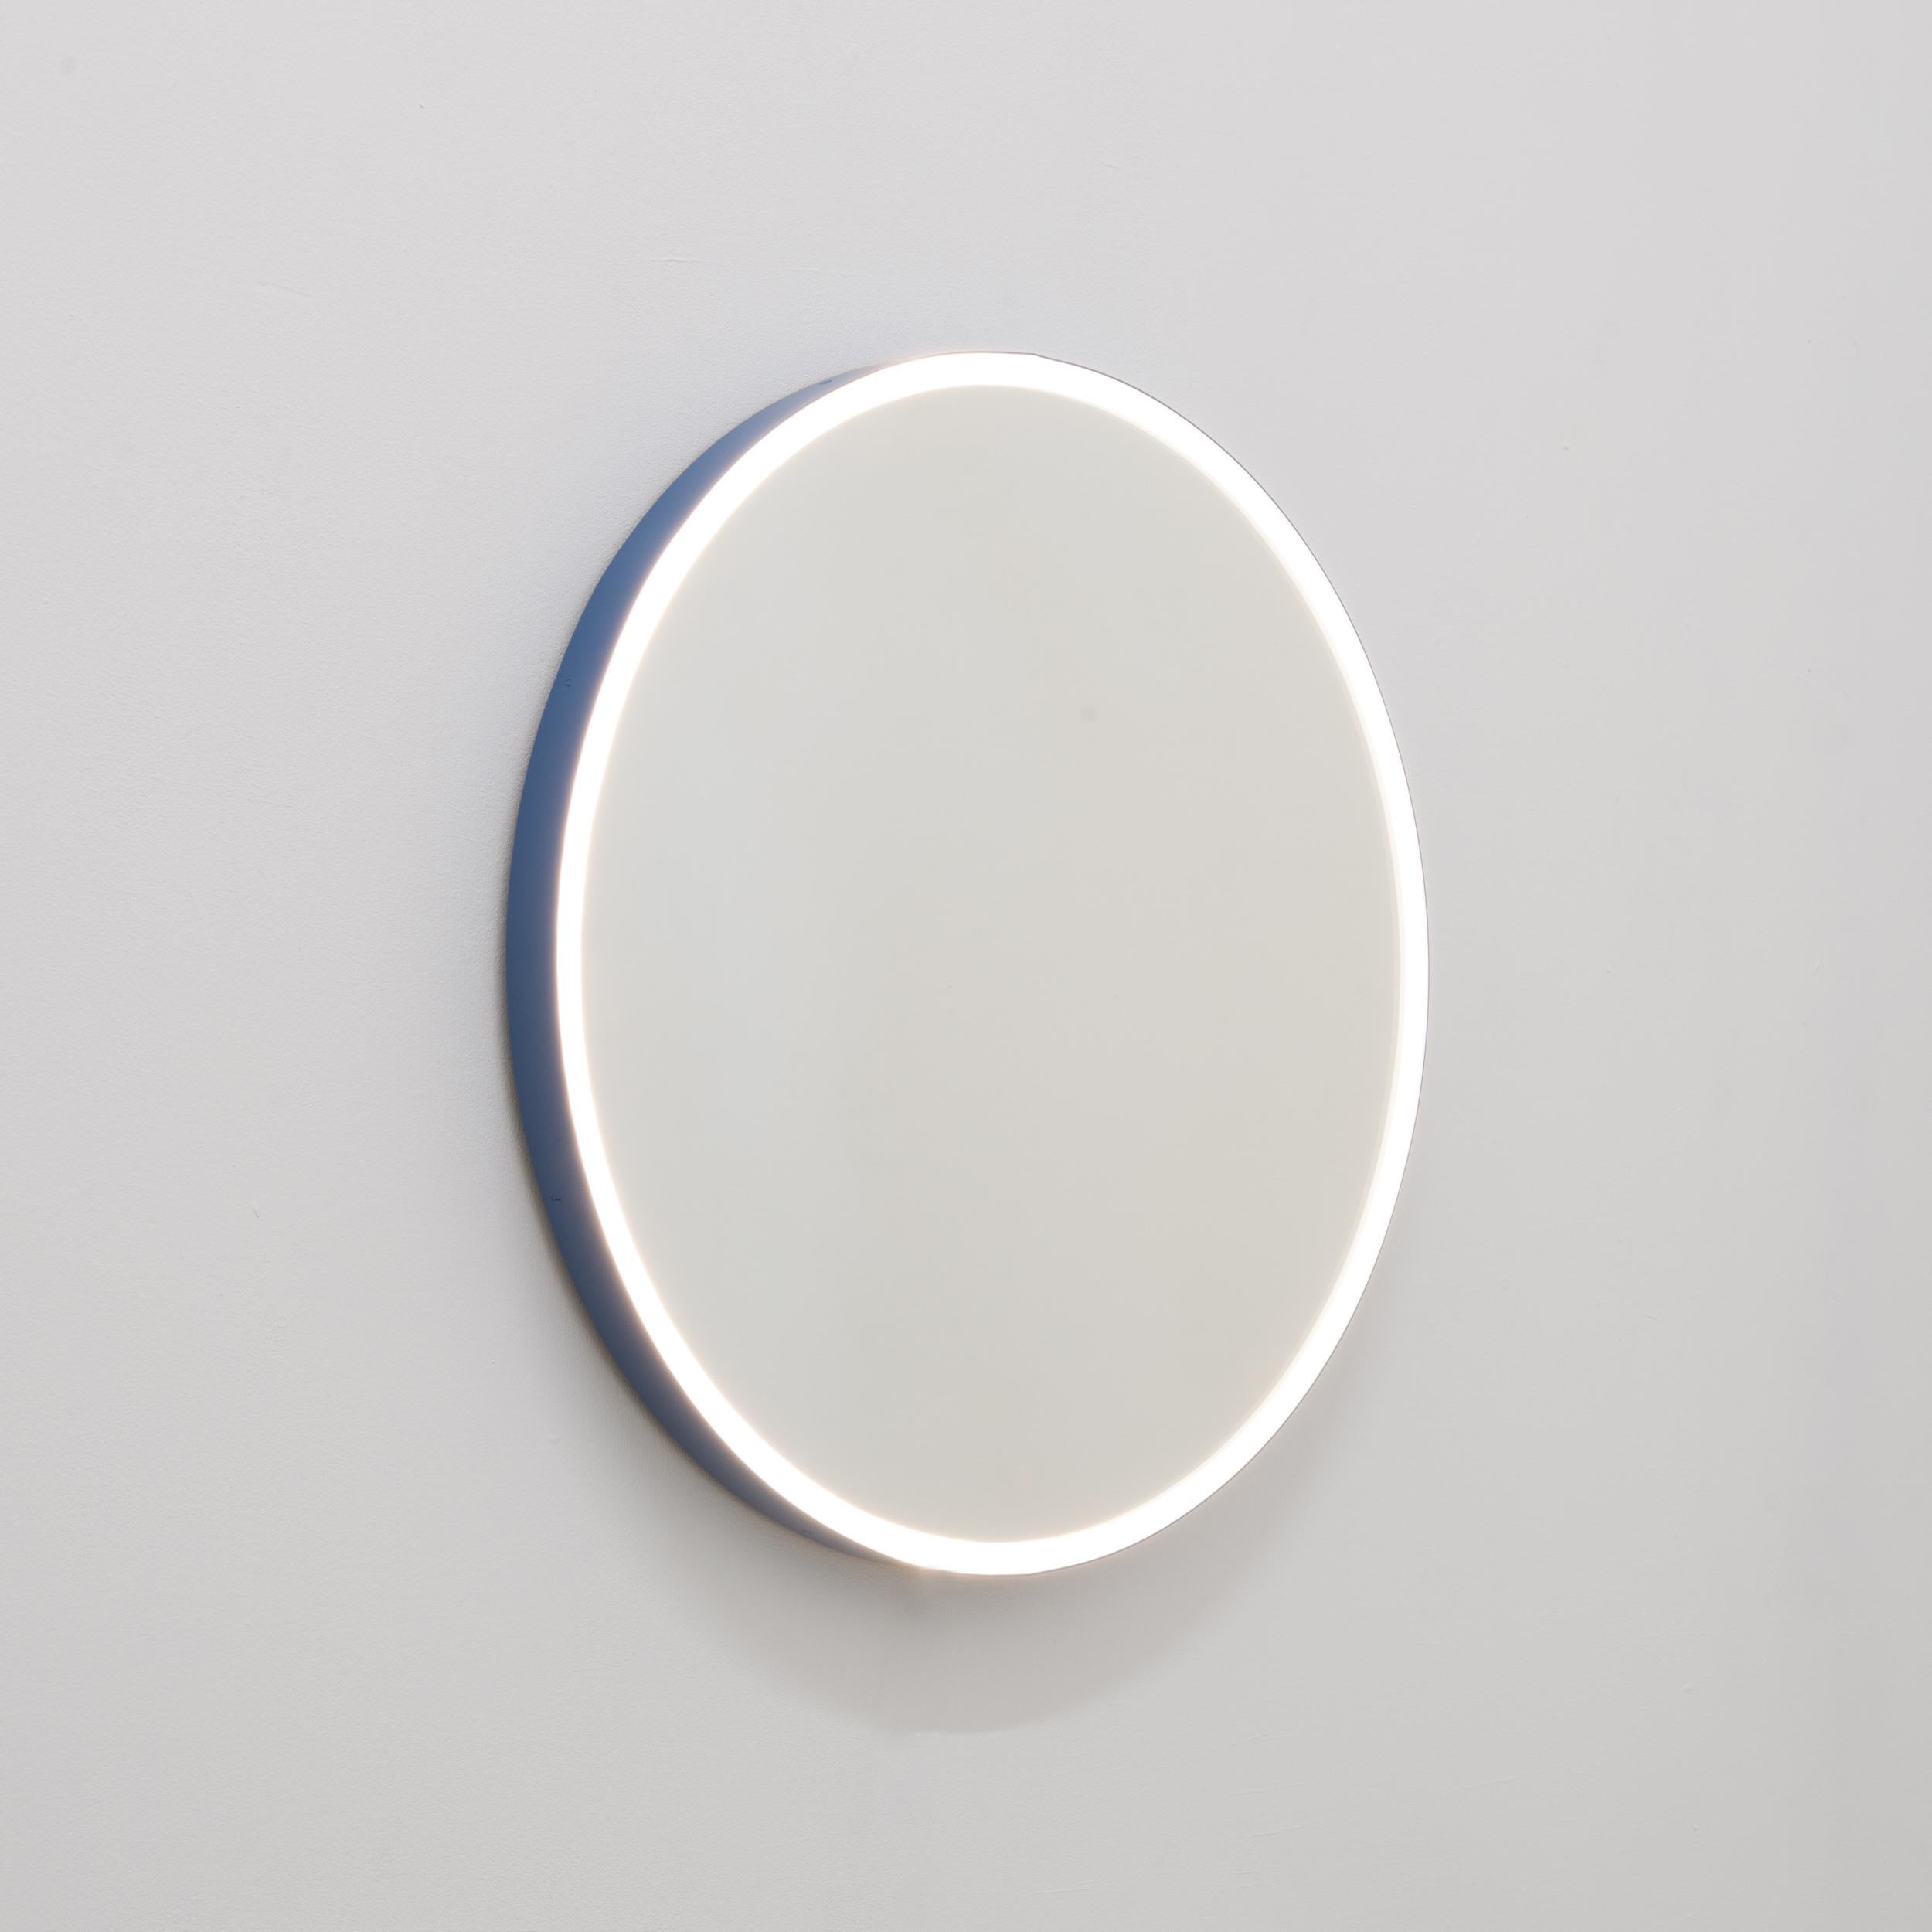 Charmant miroir rond Orbis™ frontal Illuminé avec un cadre moderne peint par poudrage en bleu (code couleur RAL 5014) fabriqué selon la norme IP67.

Ce miroir est entièrement personnalisable. Elle est illustrée avec une lumière chaude 3000K 14,4W/m,